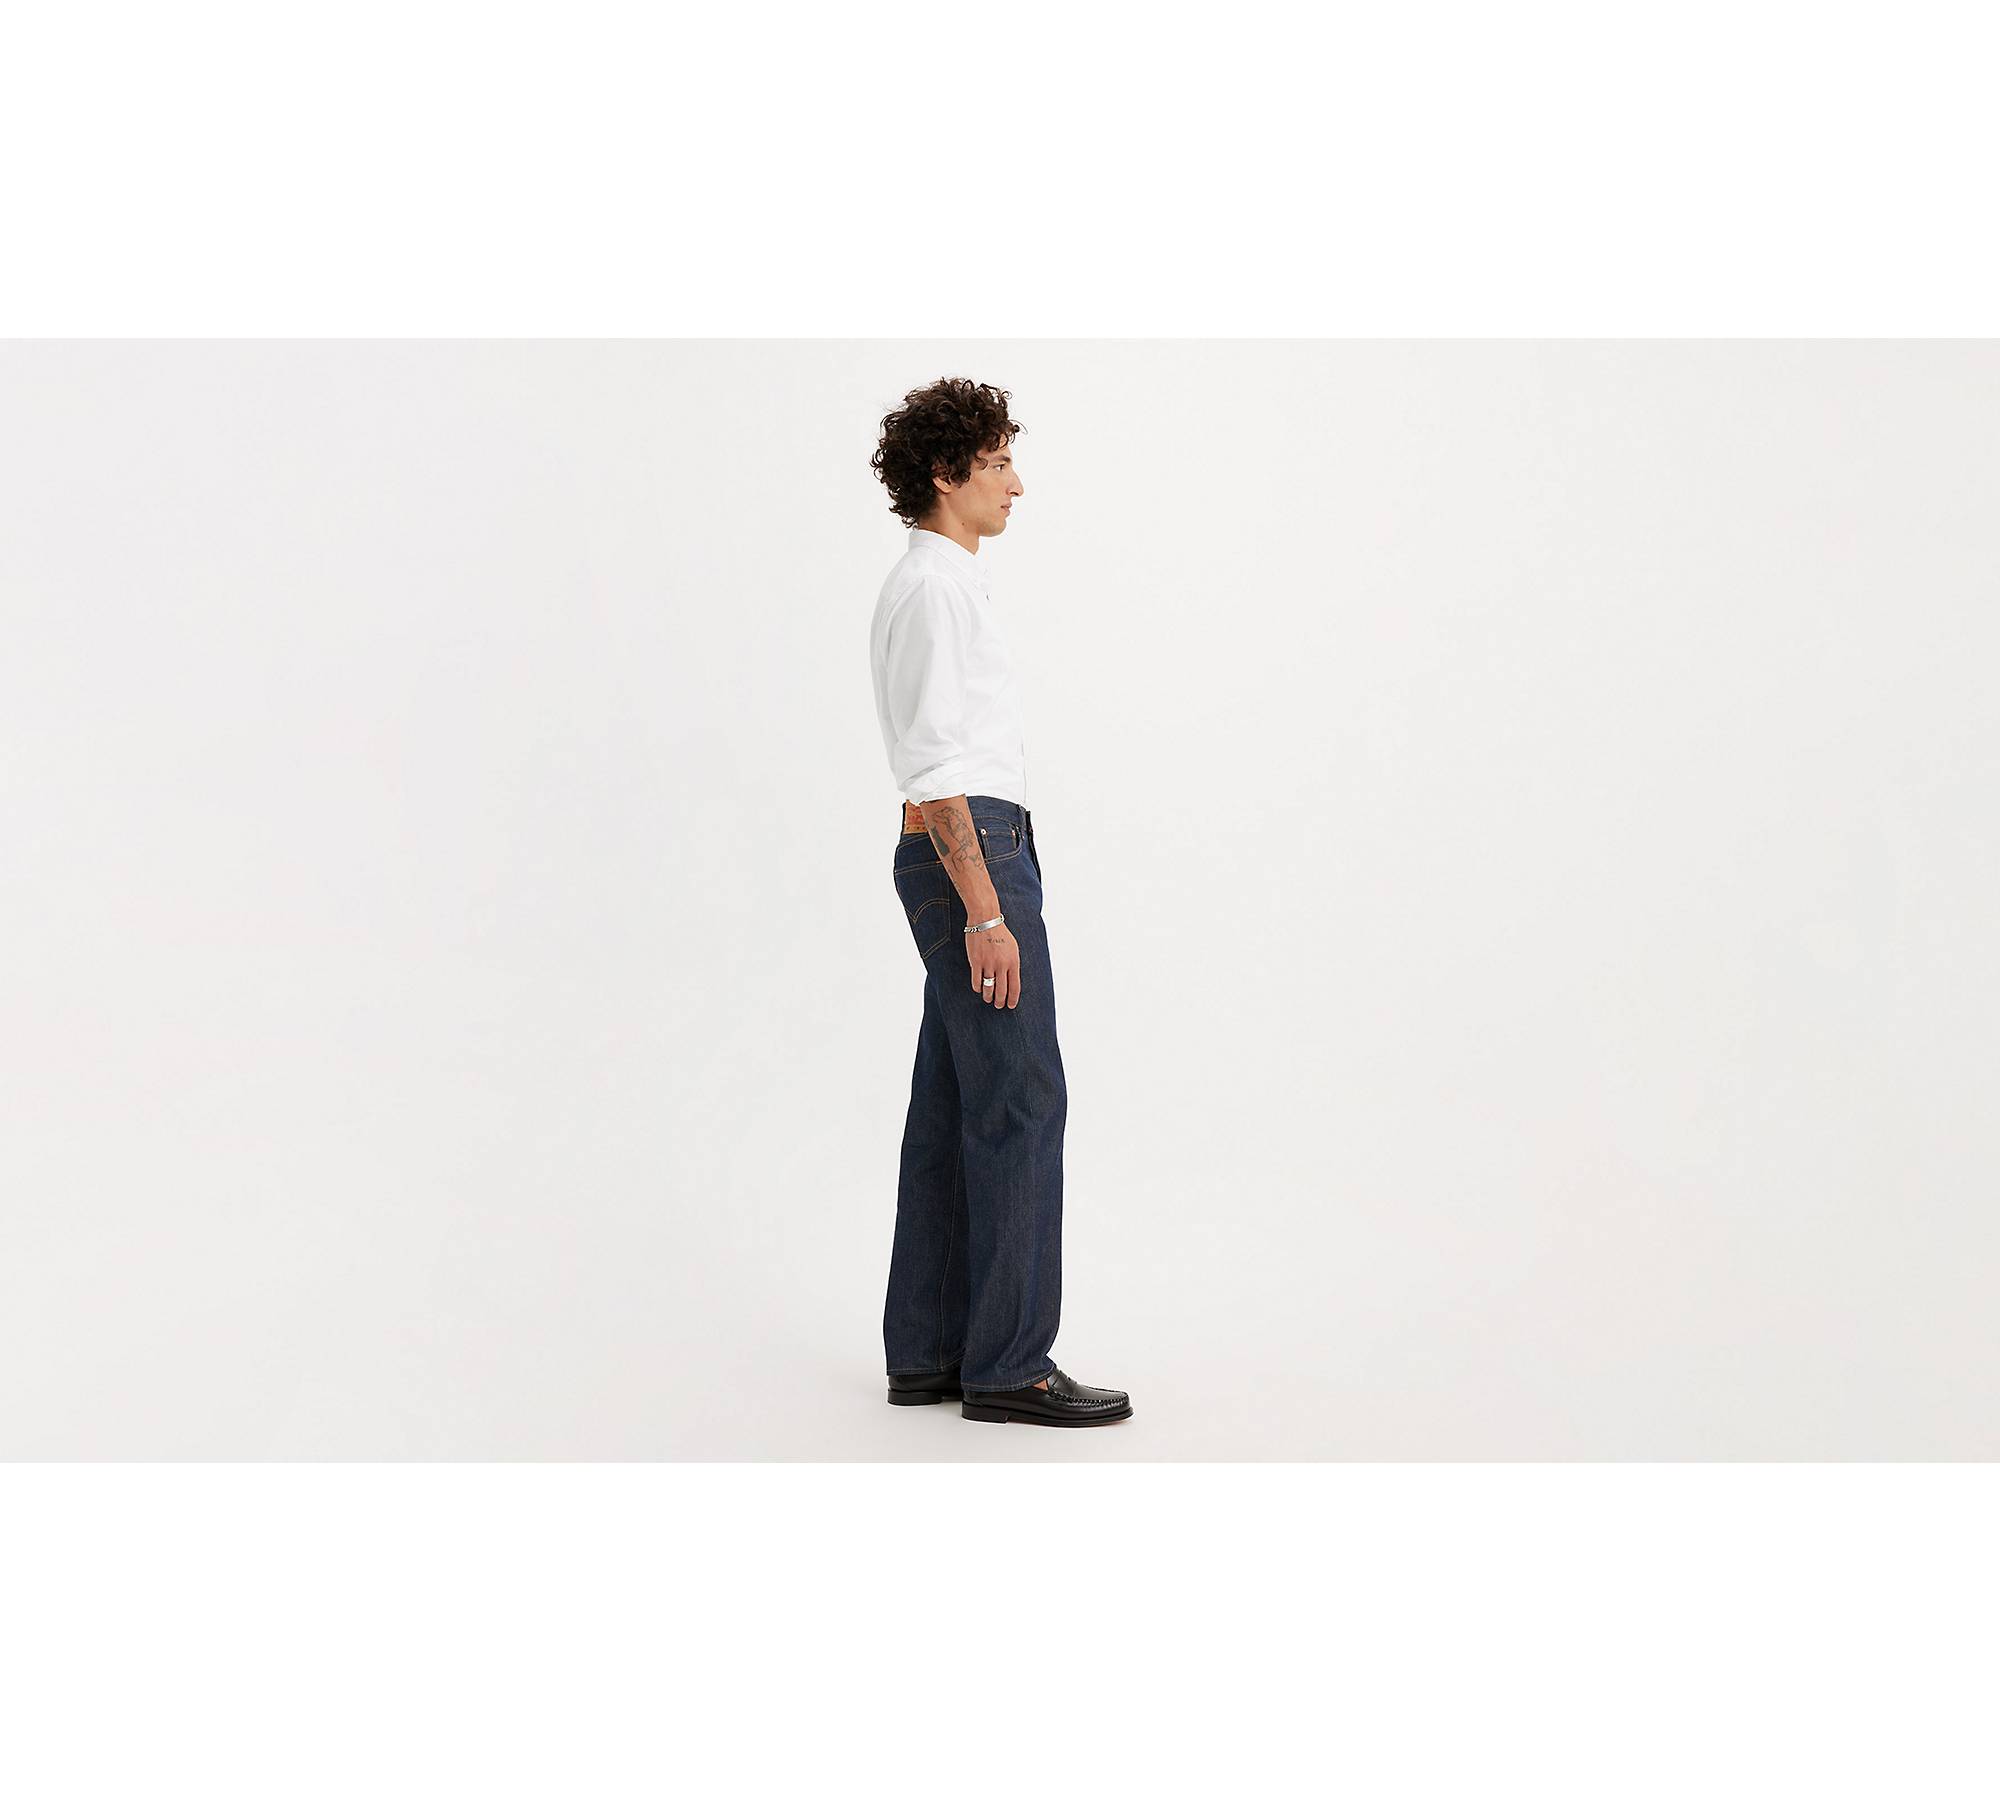 Levis, 501 Original Shrink-to-Fit Jeans Black